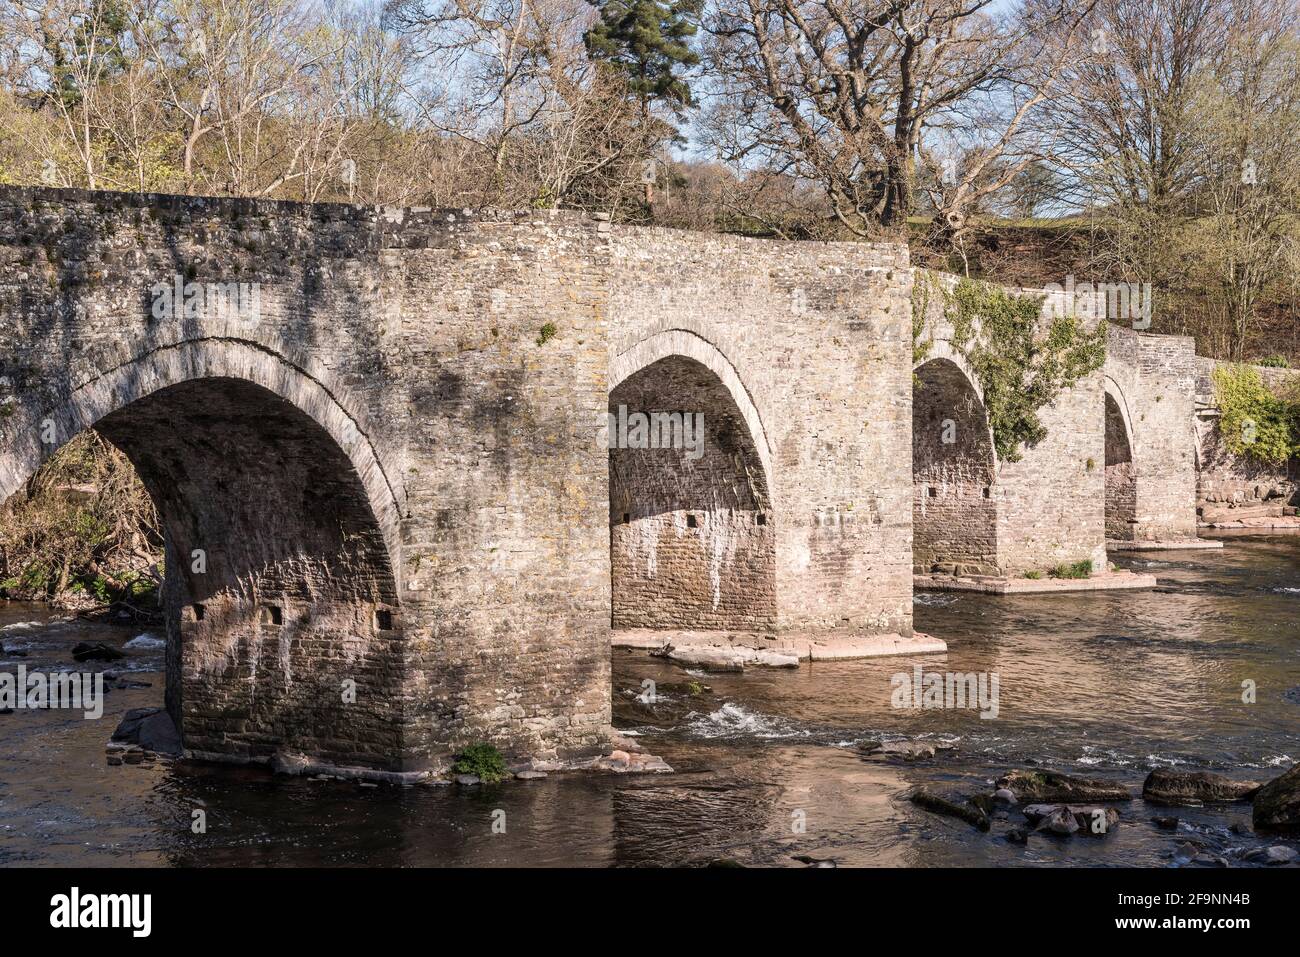 L'ancien pont en pierre traversant la rivière Usk à Llangynidr, construit vers 1700 (près de Crickhowell, Powys, pays de Galles, Royaume-Uni) Banque D'Images